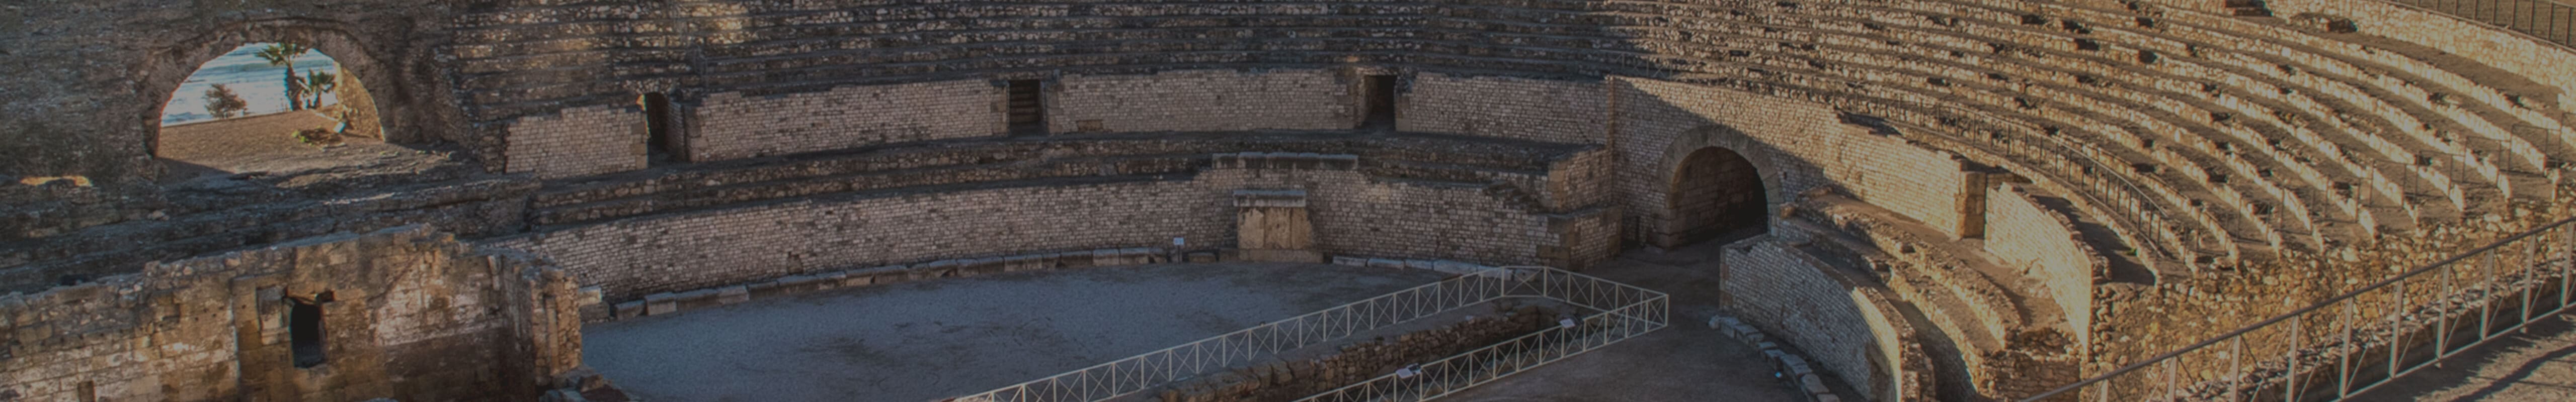 Les passionnés de SEAT choisissent Tarraco - ruines romaines